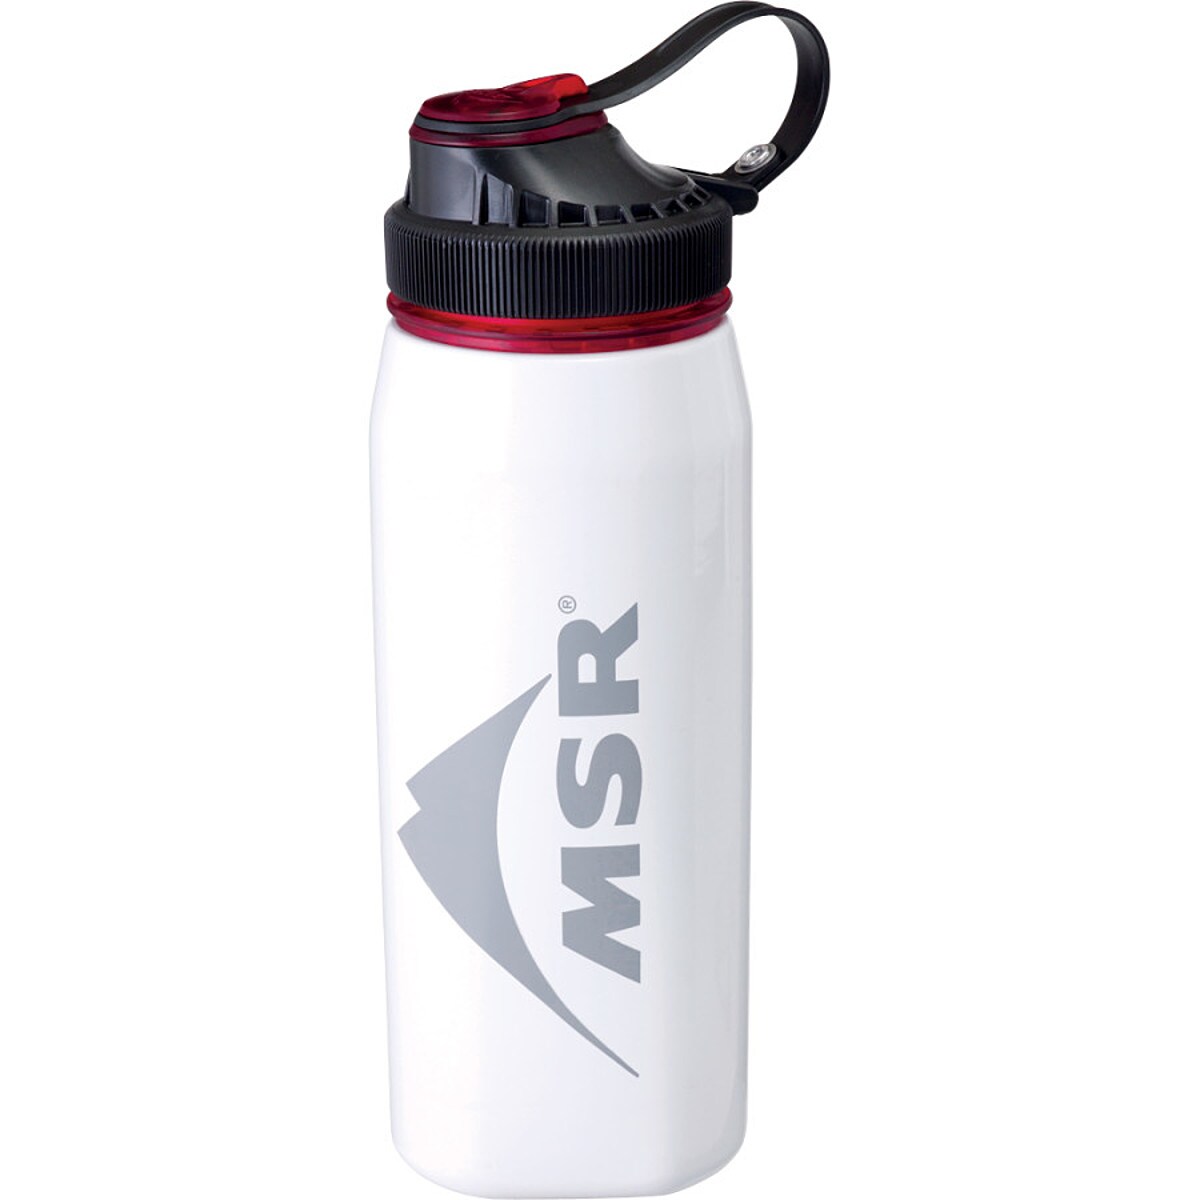 MSR Alpine Stainless Steel Water Bottle